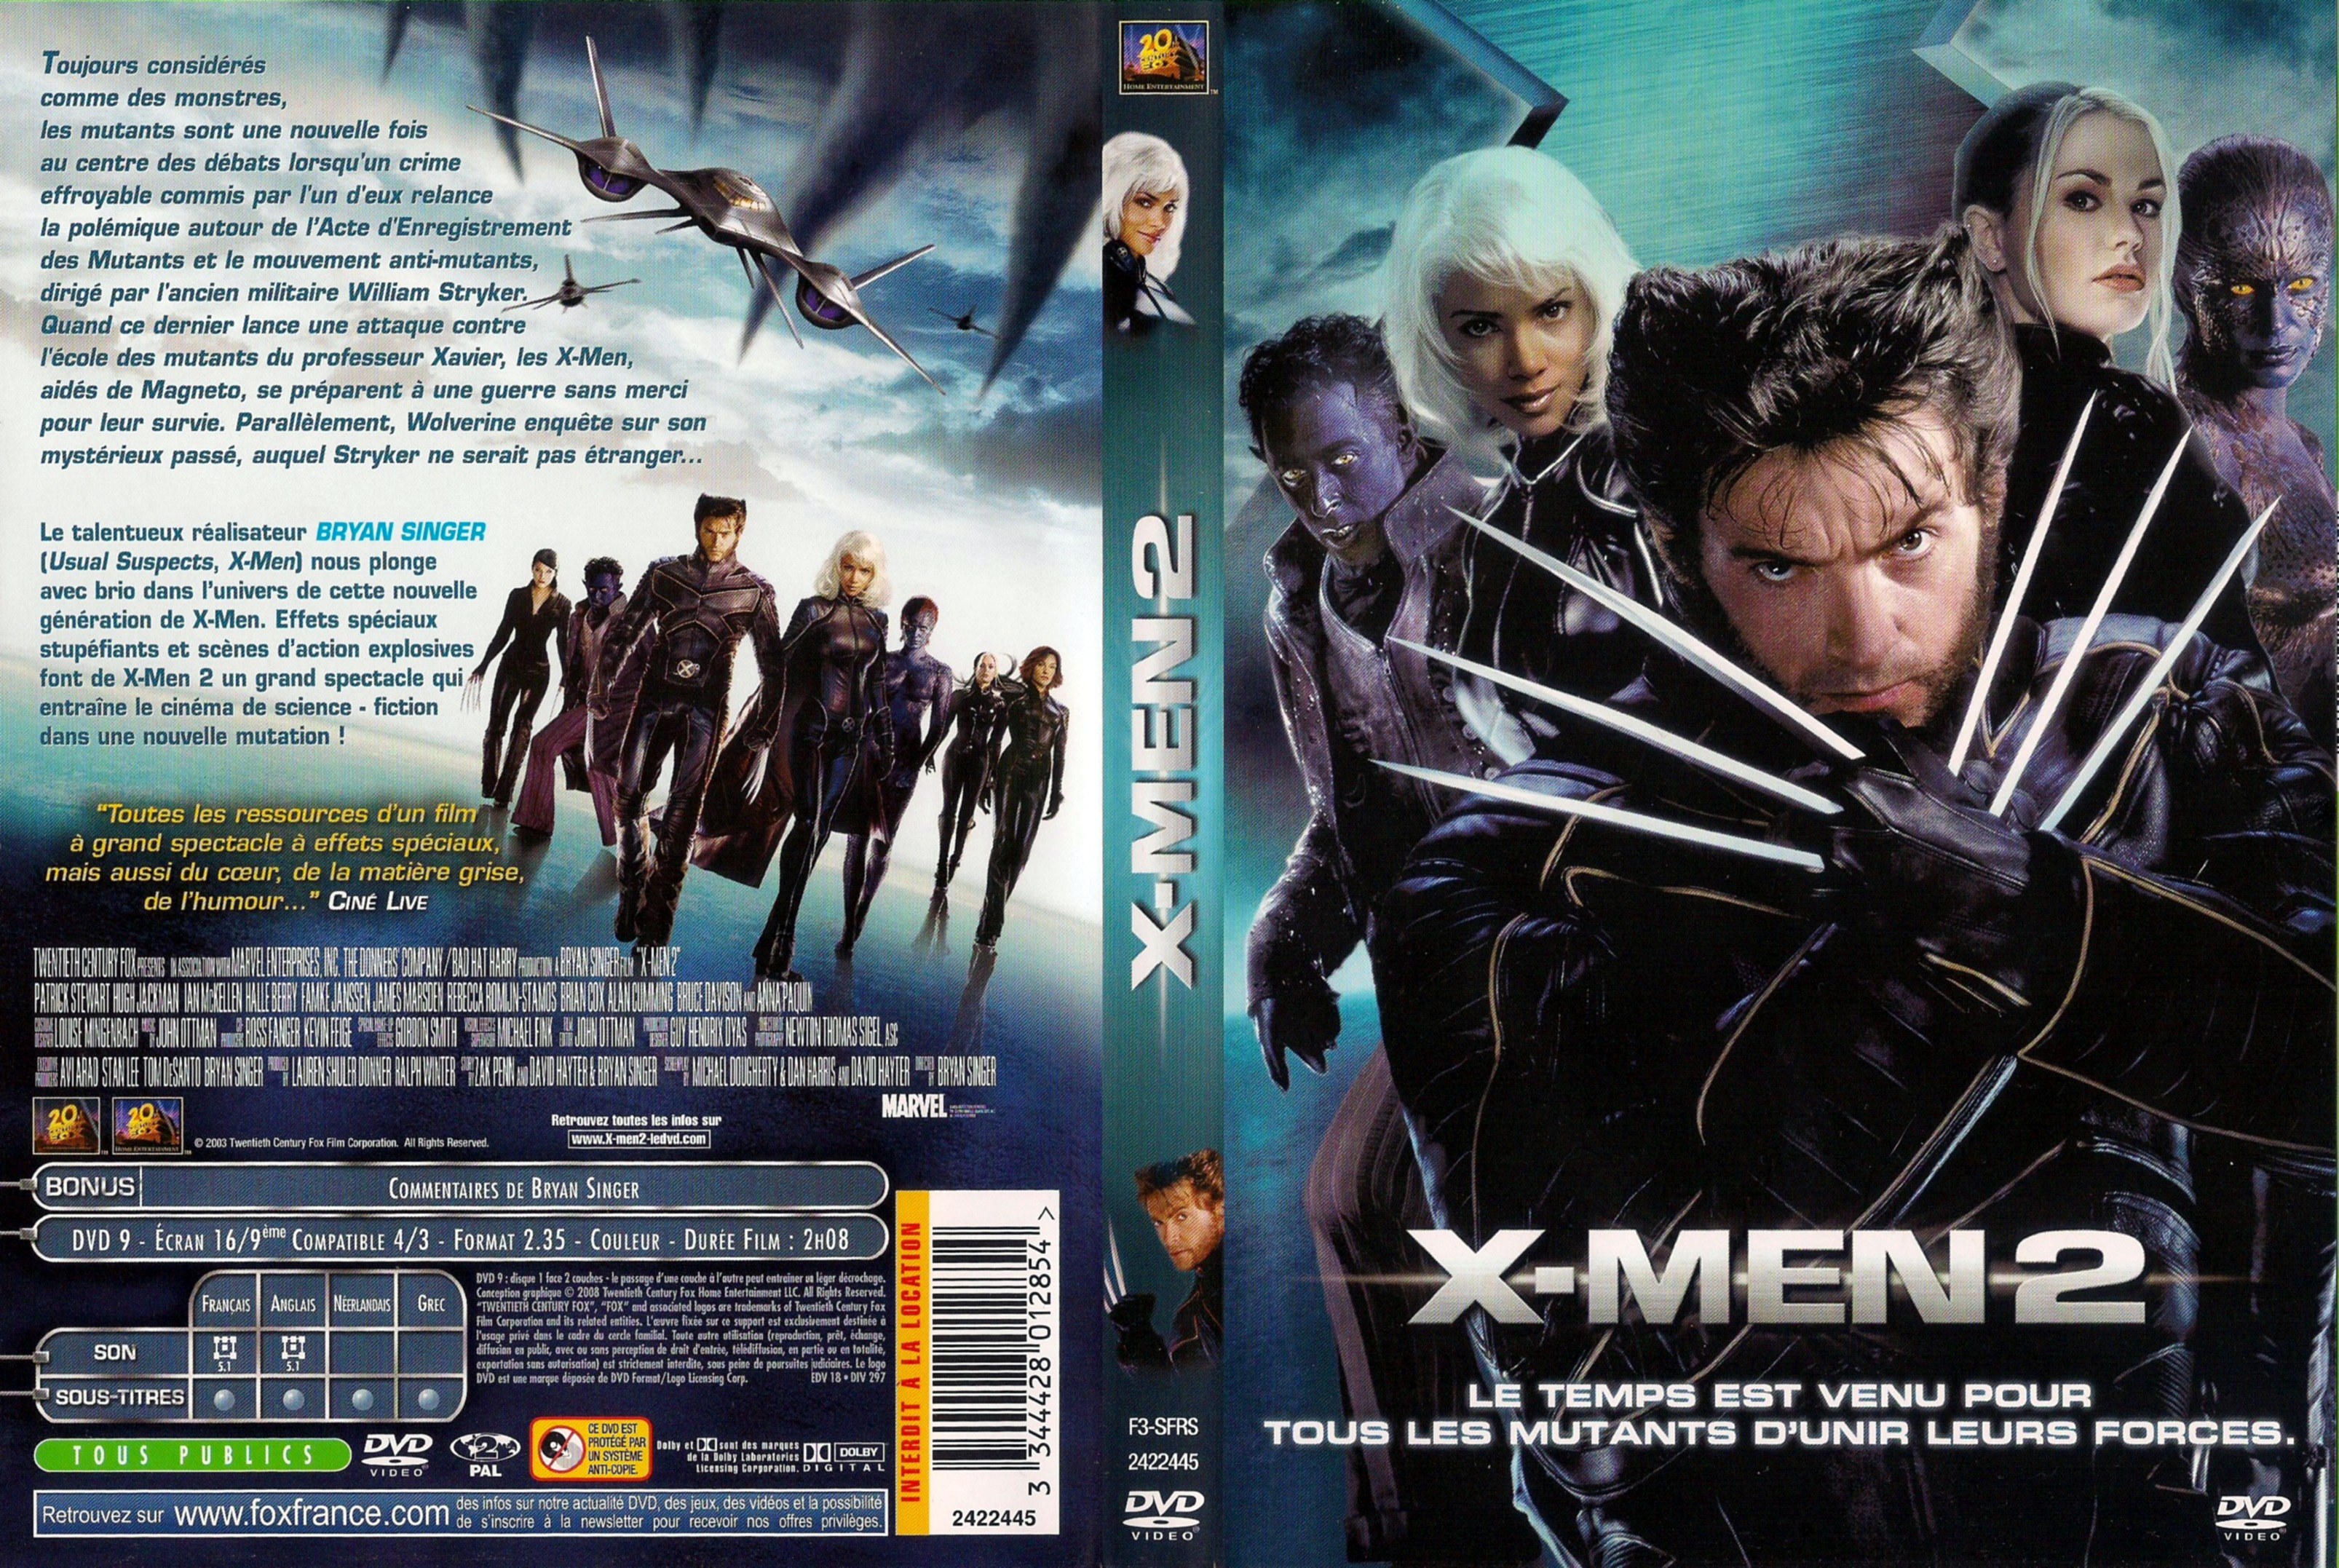 Jaquette DVD X-men 2 v4